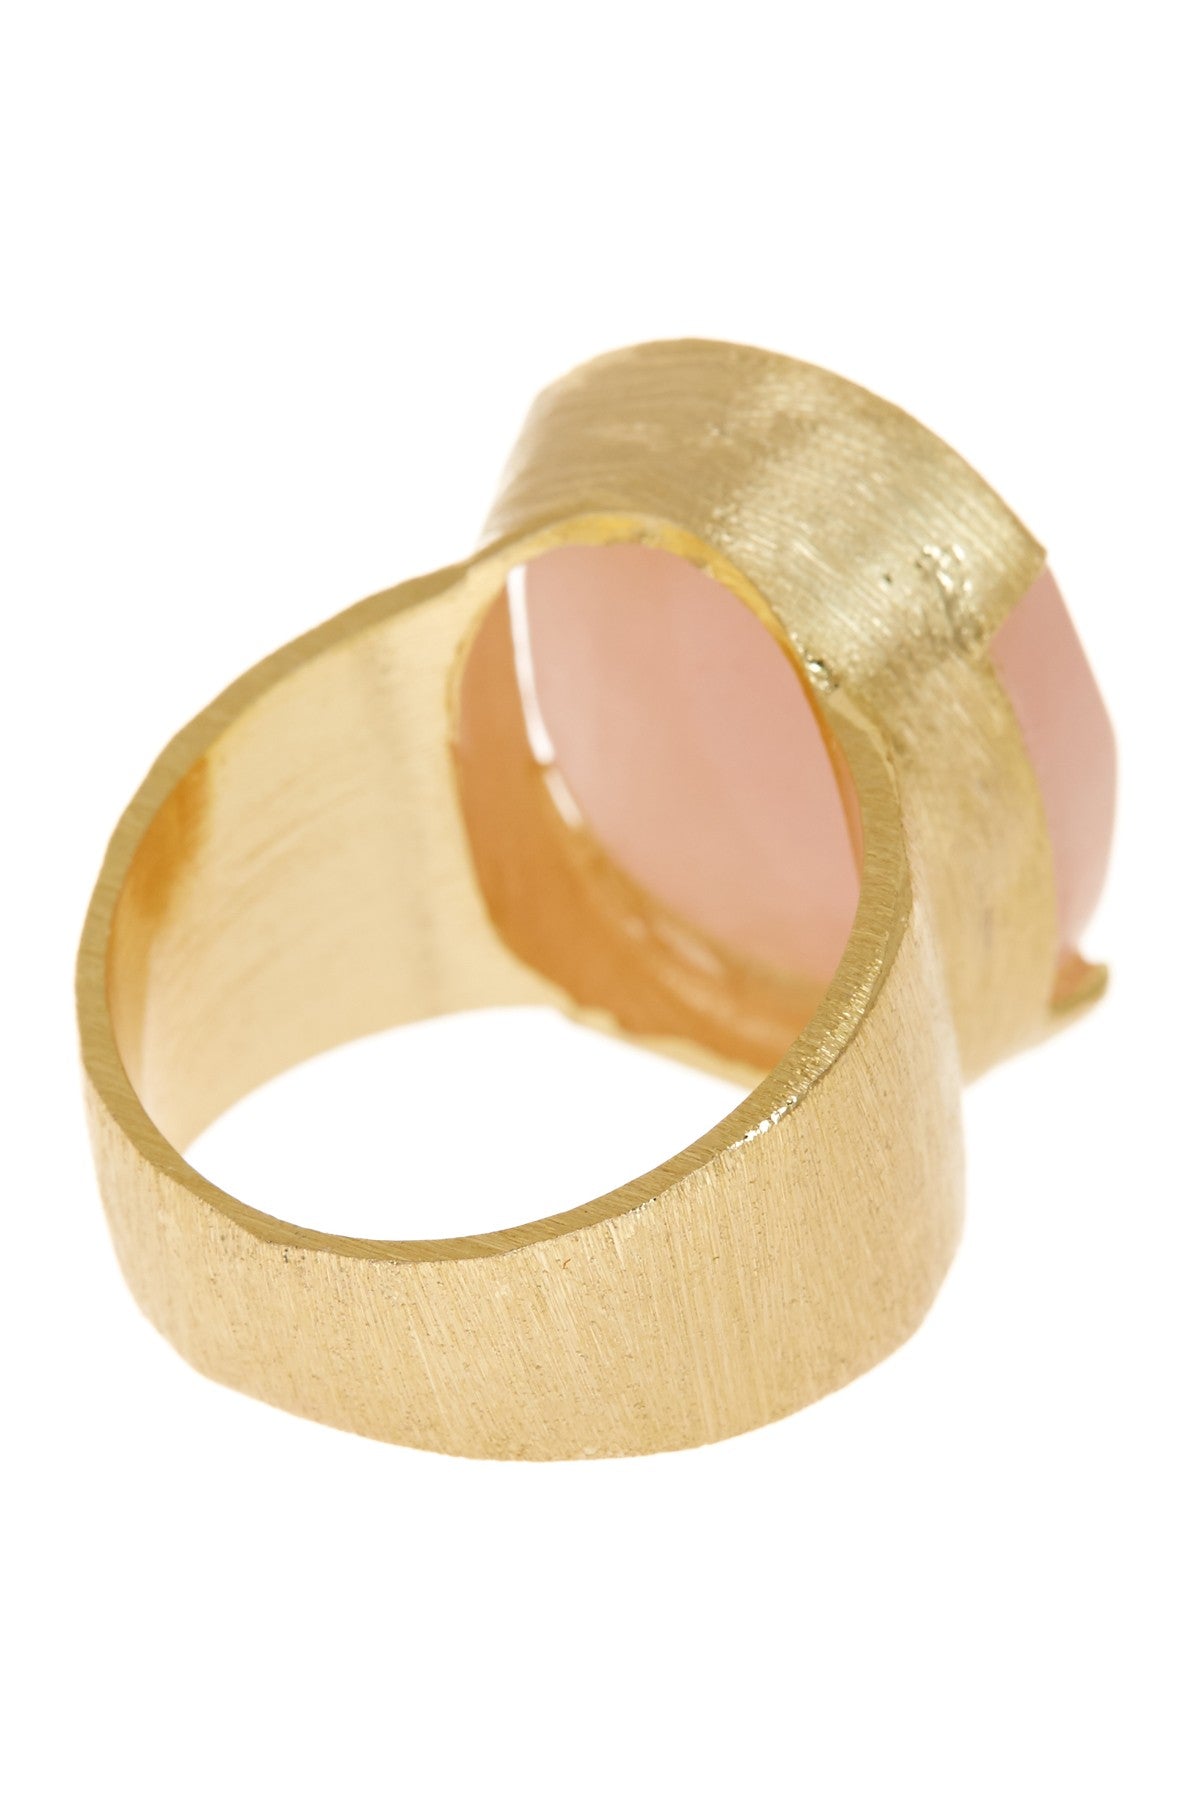 Rose Quartz & 14k Gold Filled Ring - GF